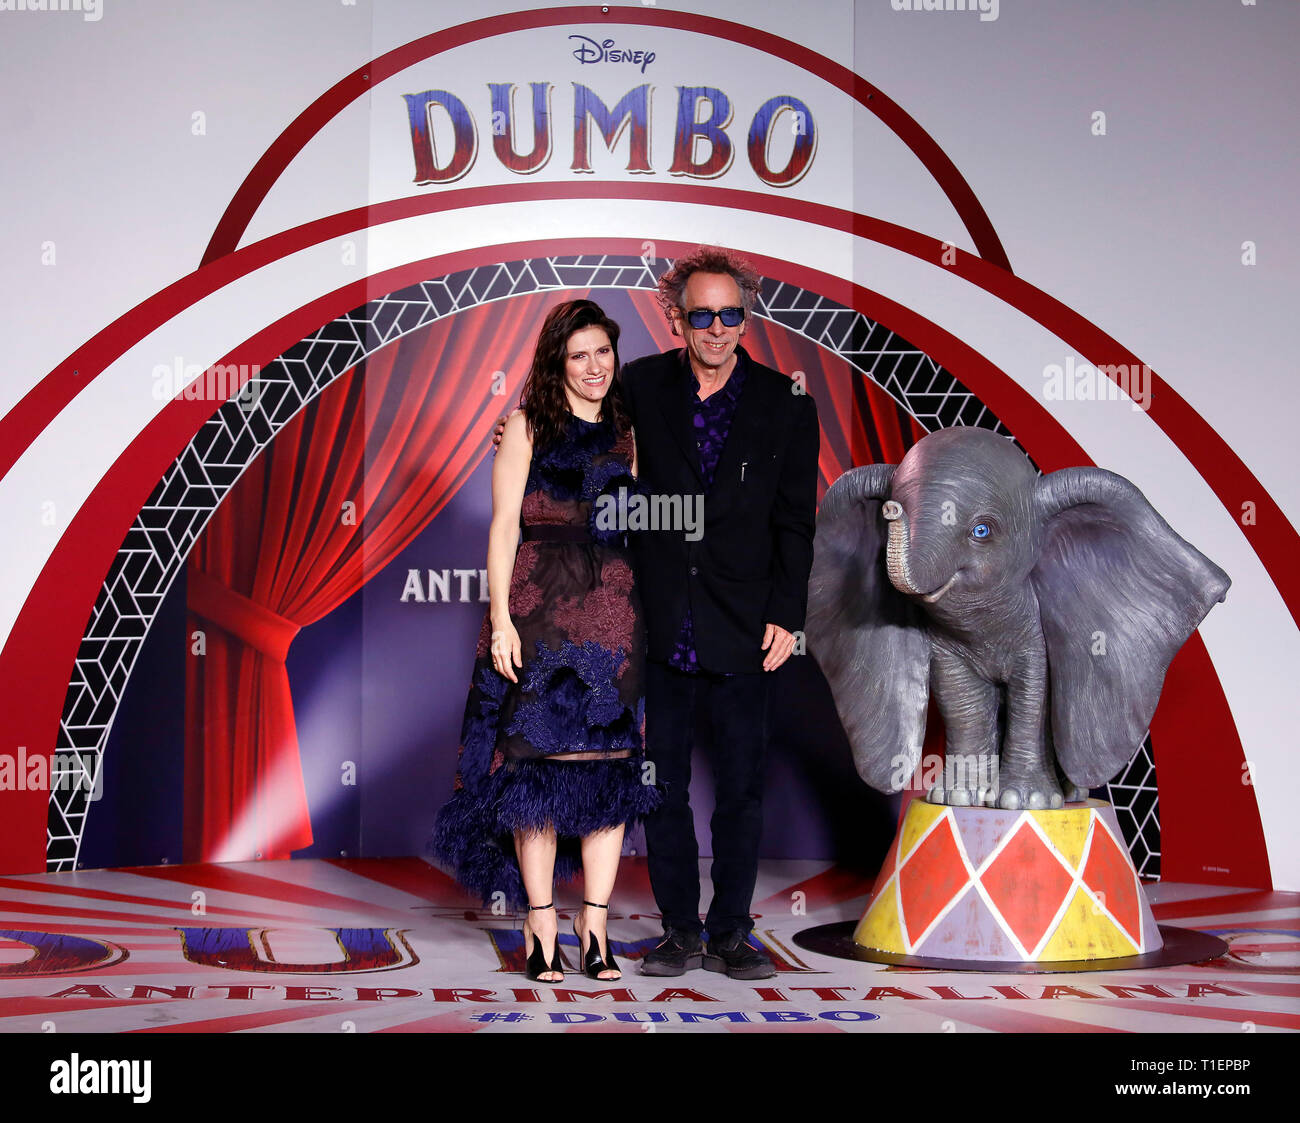 Roma, Italia. 26 Mar, 2019. Tim Burton y la cantante Elisa que cantaba la banda  sonora, Roma, 26 de marzo de 2019. Estreno de la película 'Dumbo' dirigido  por Tim Burton foto